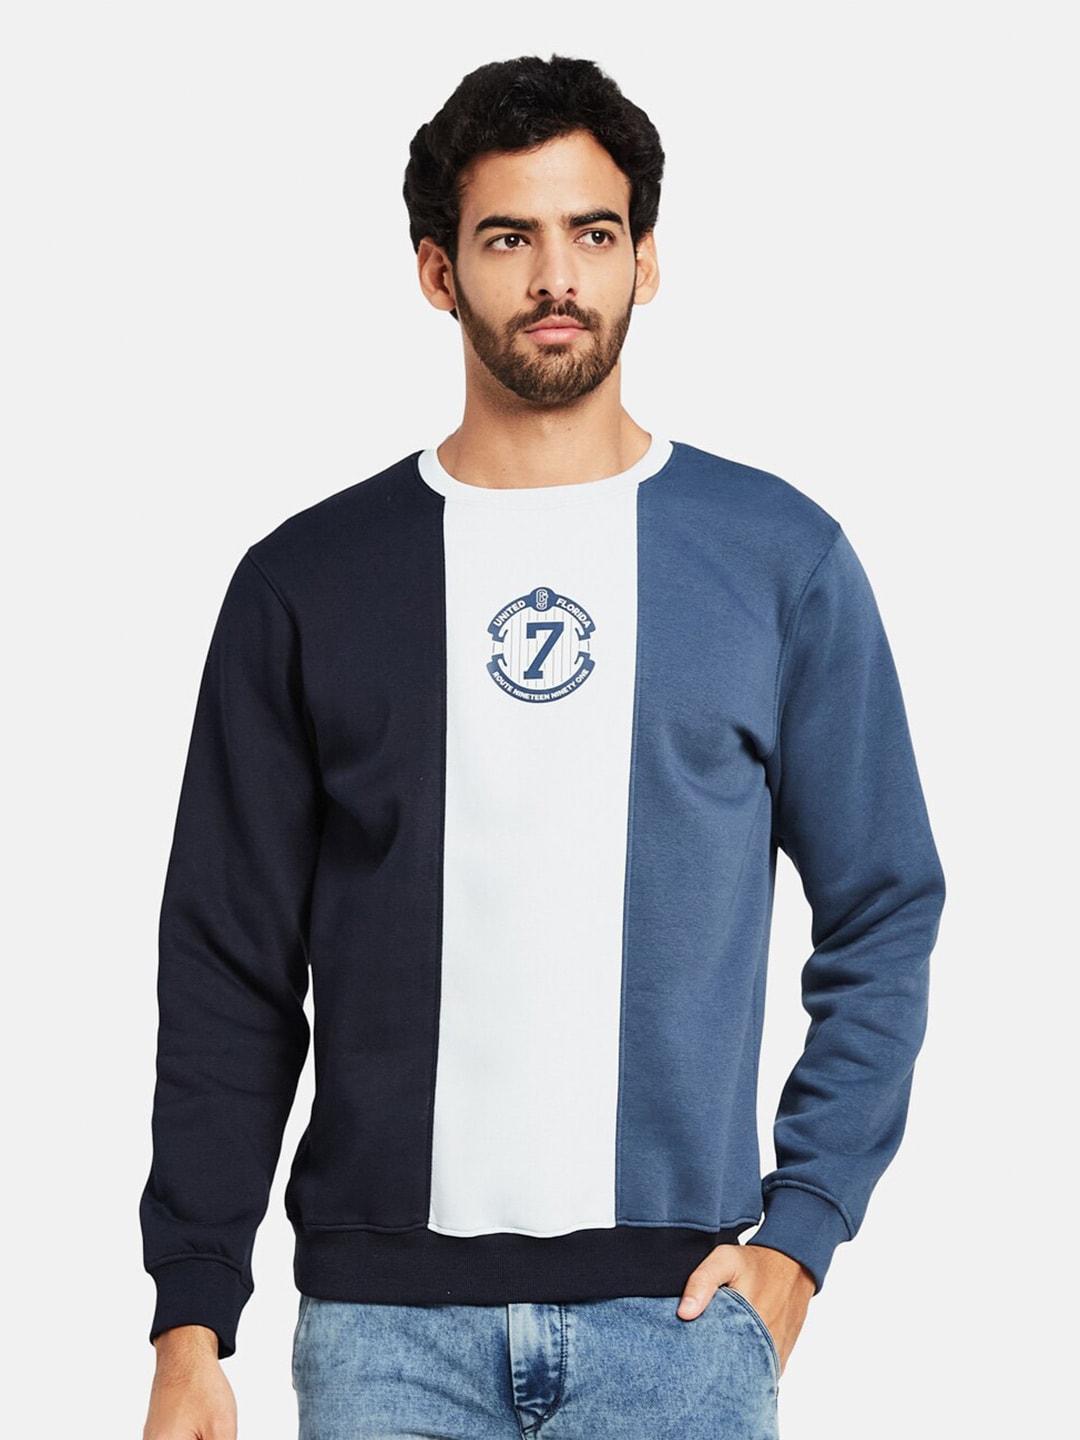 octave-colourblocked-fleece-sweatshirt